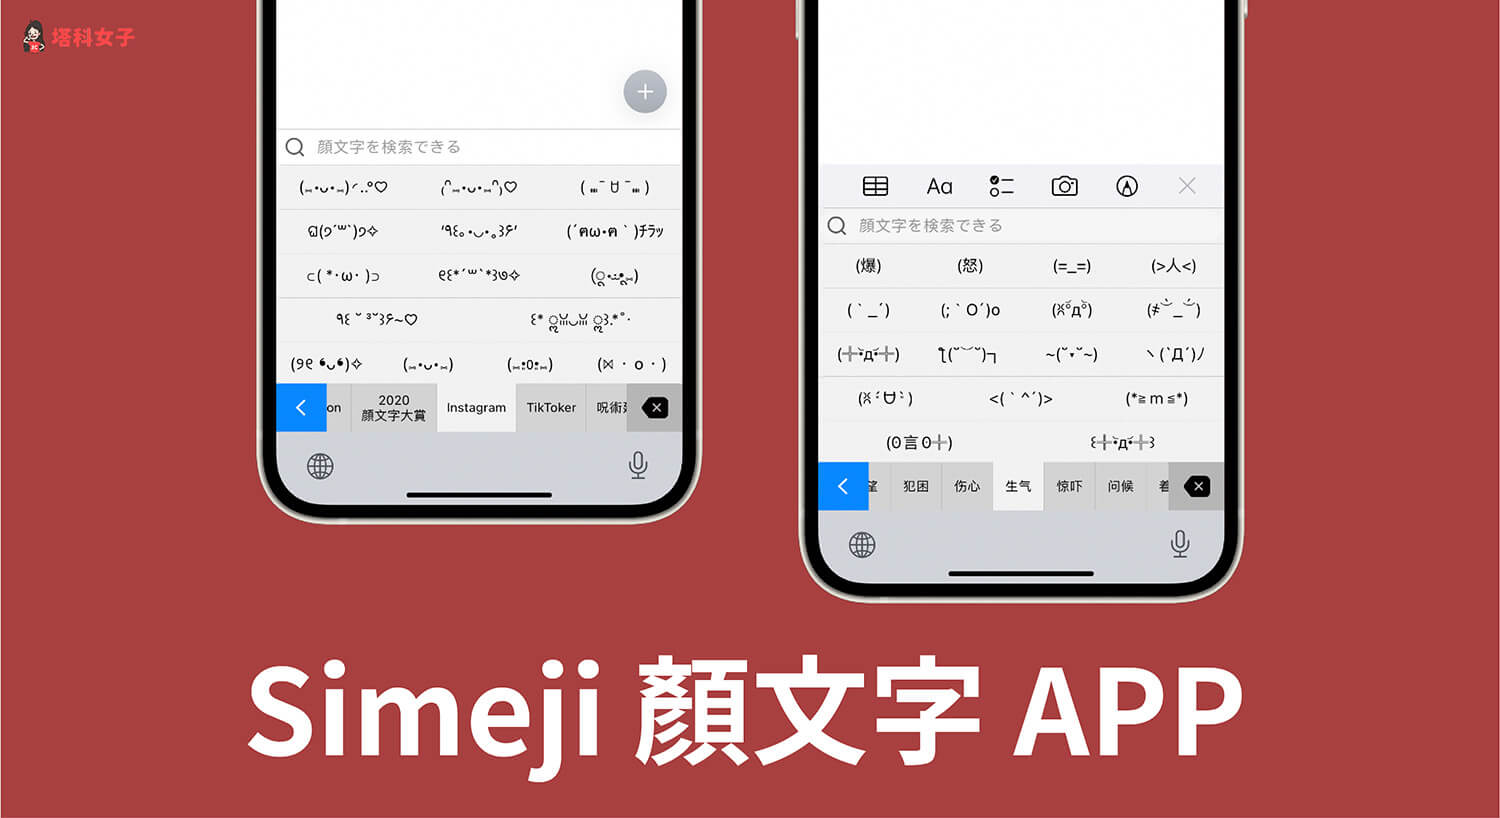 顏文字APP Simeji 內建 1000+ 種顏文字及表情符號的日文鍵盤